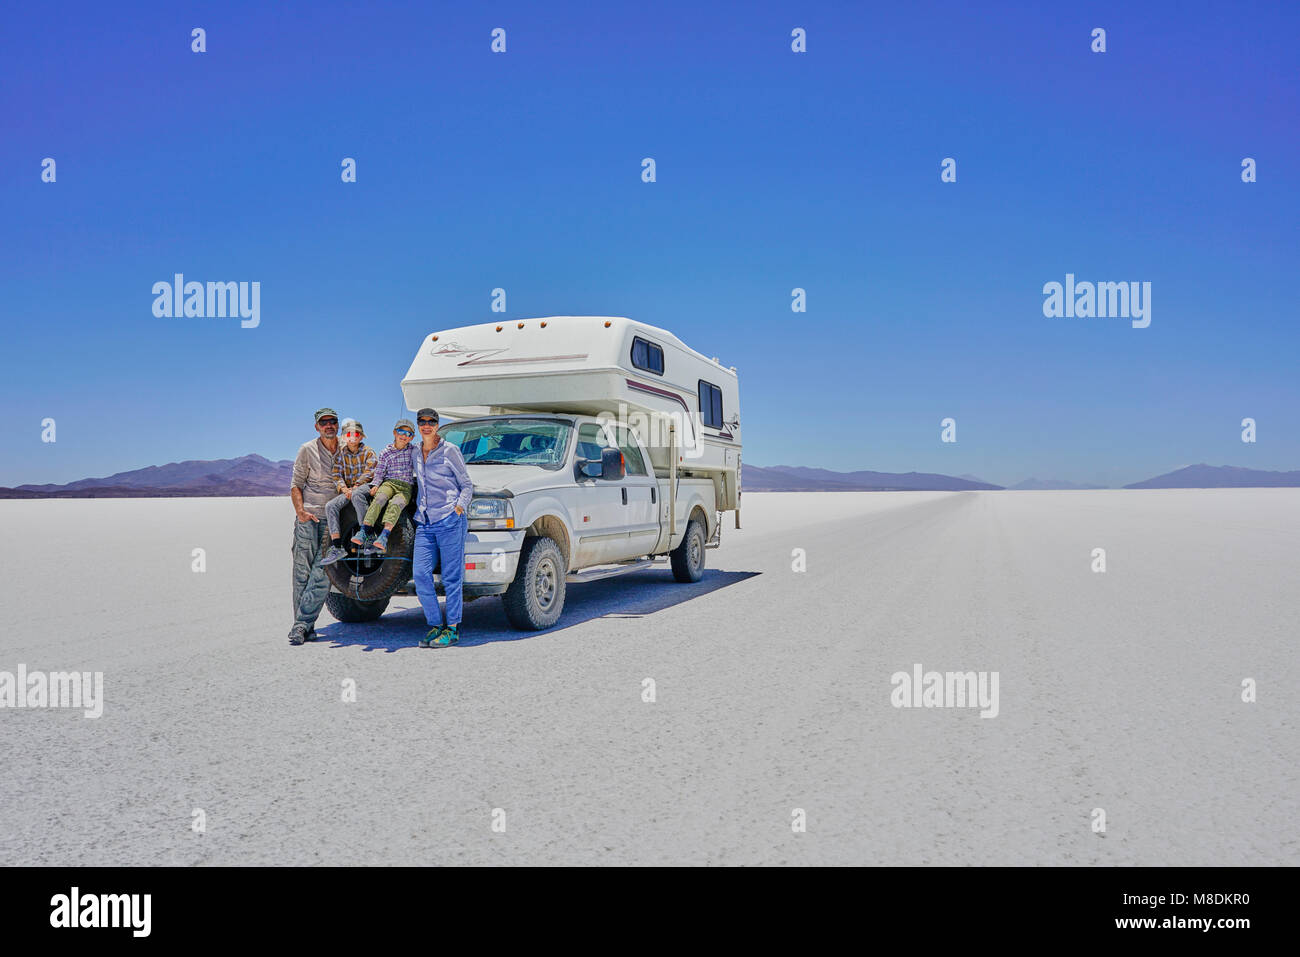 Portrait de famille, debout devant des véhicules récréatifs en stationnement, Salar de Uyuni, Uyuni, Oruro, Bolivie, Amérique du Sud Banque D'Images